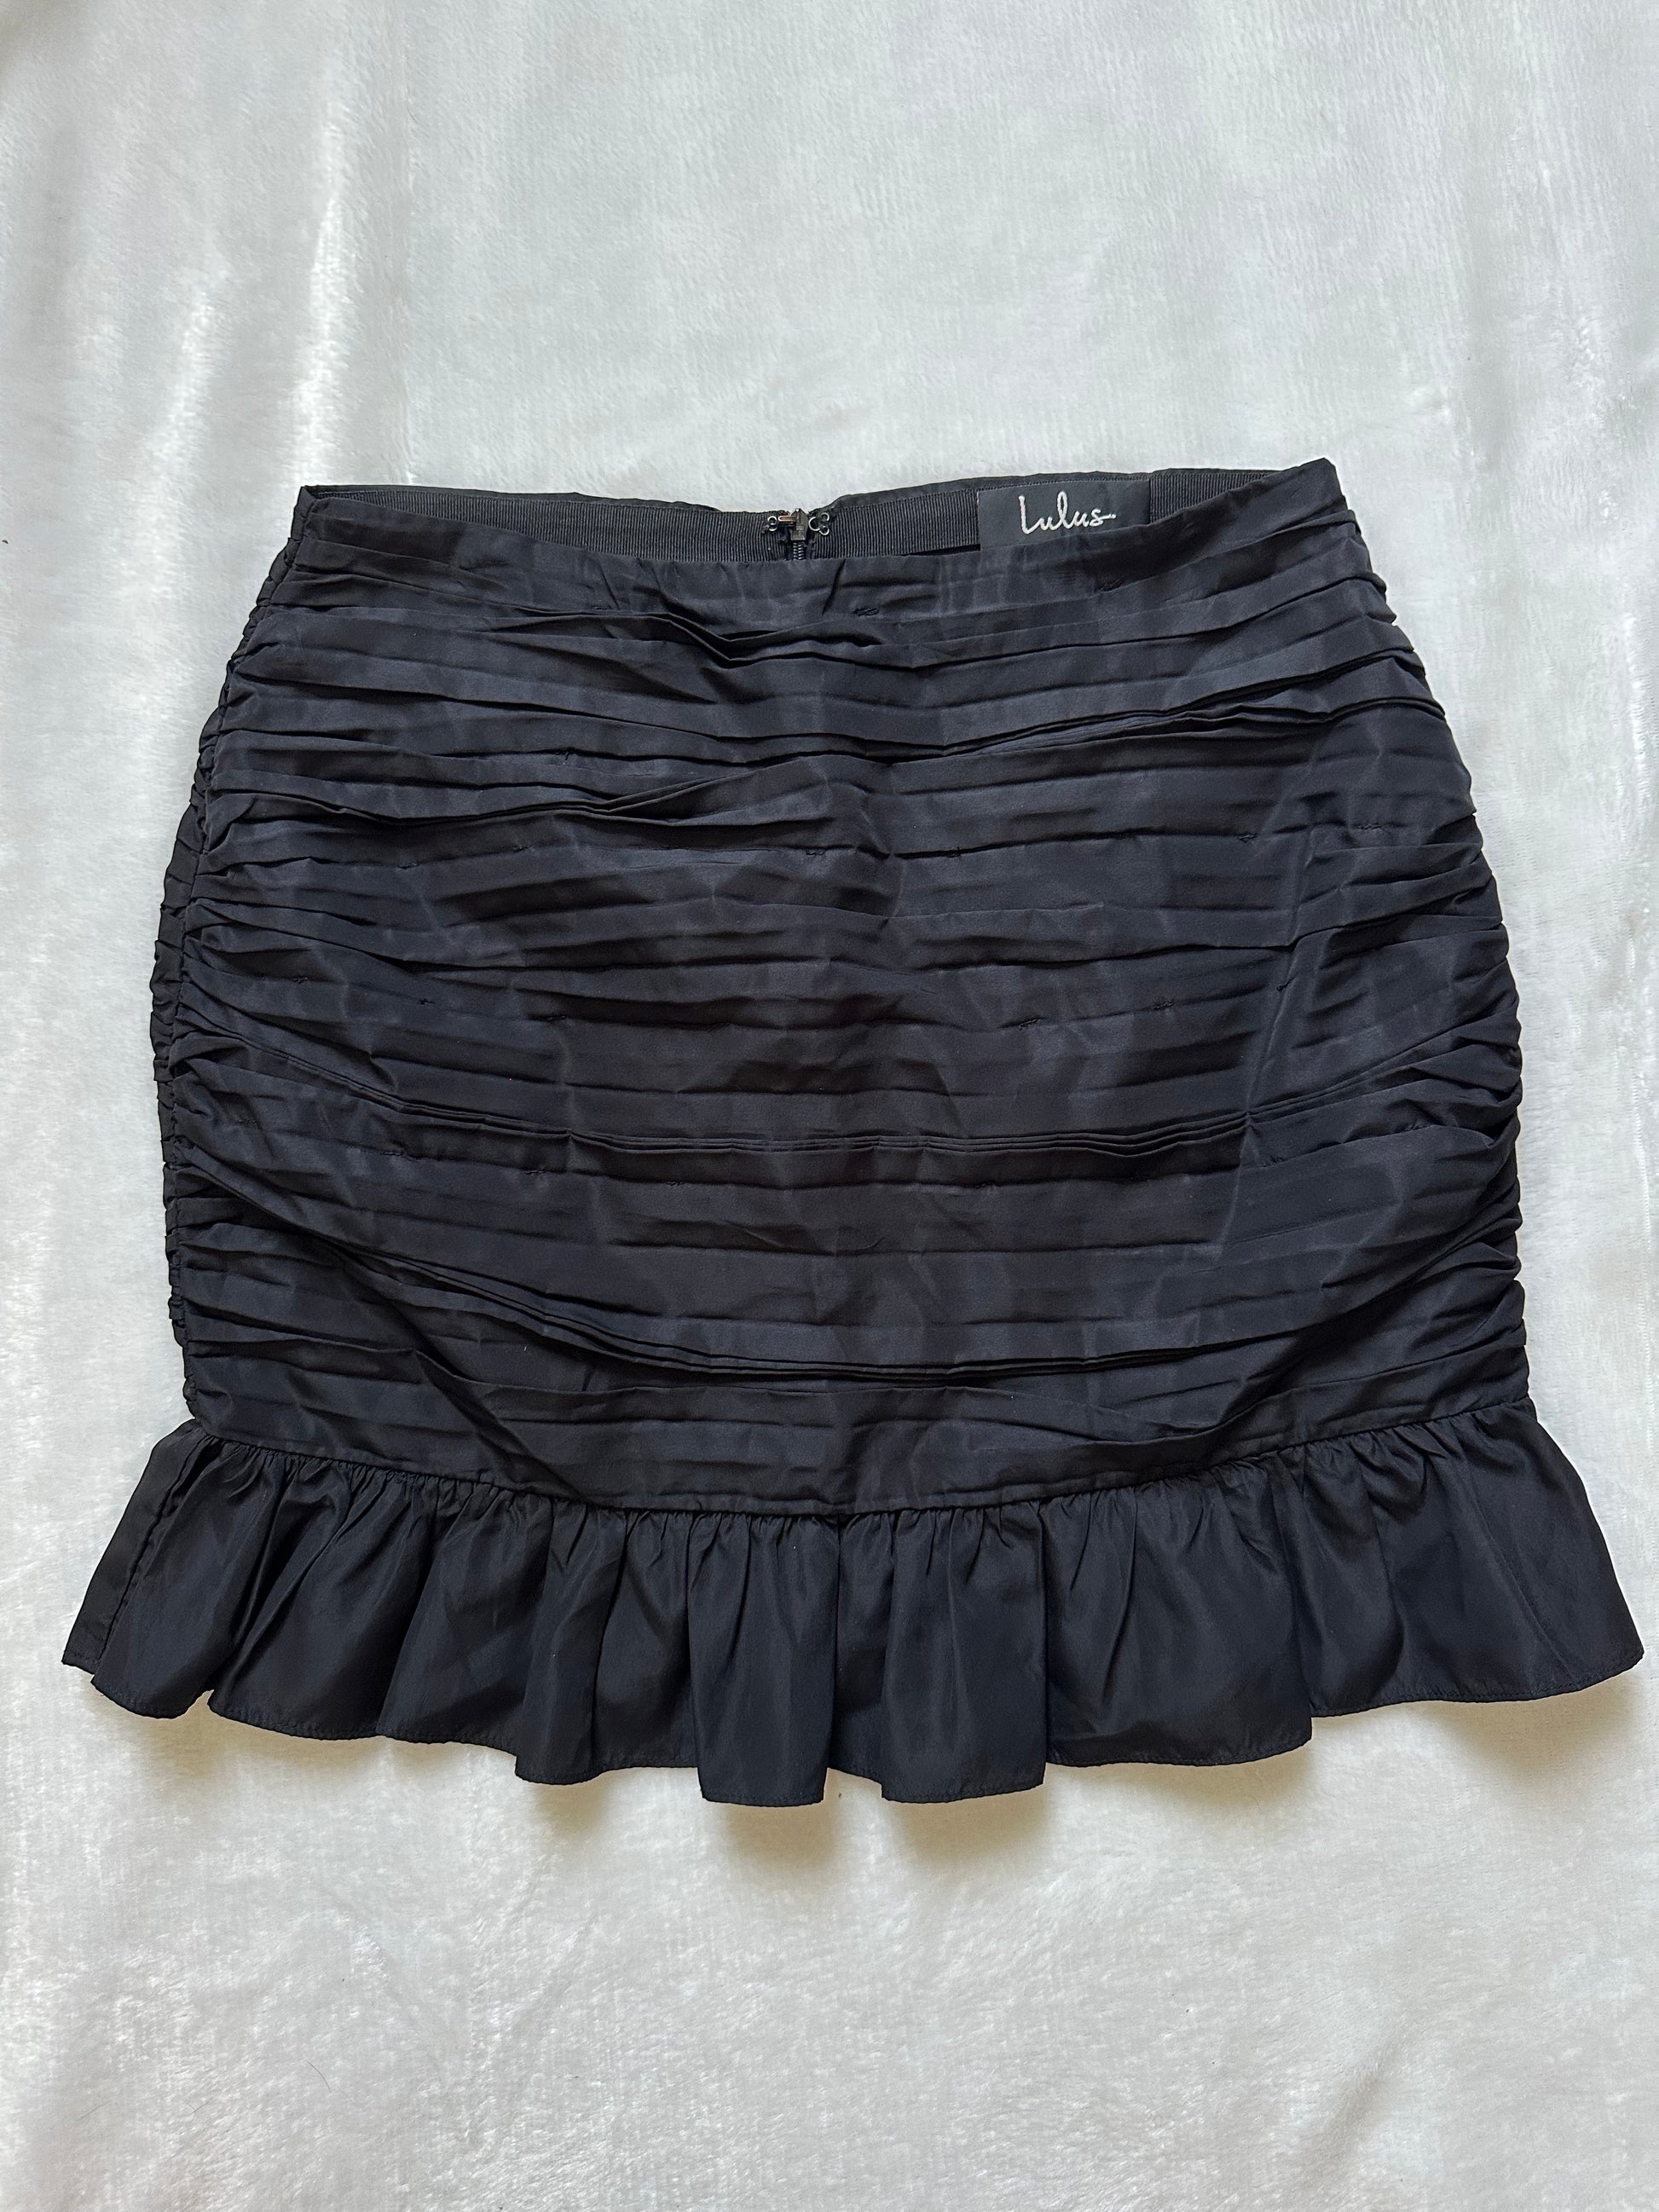 Lulus Black Mini Skirt - Better World Thrift